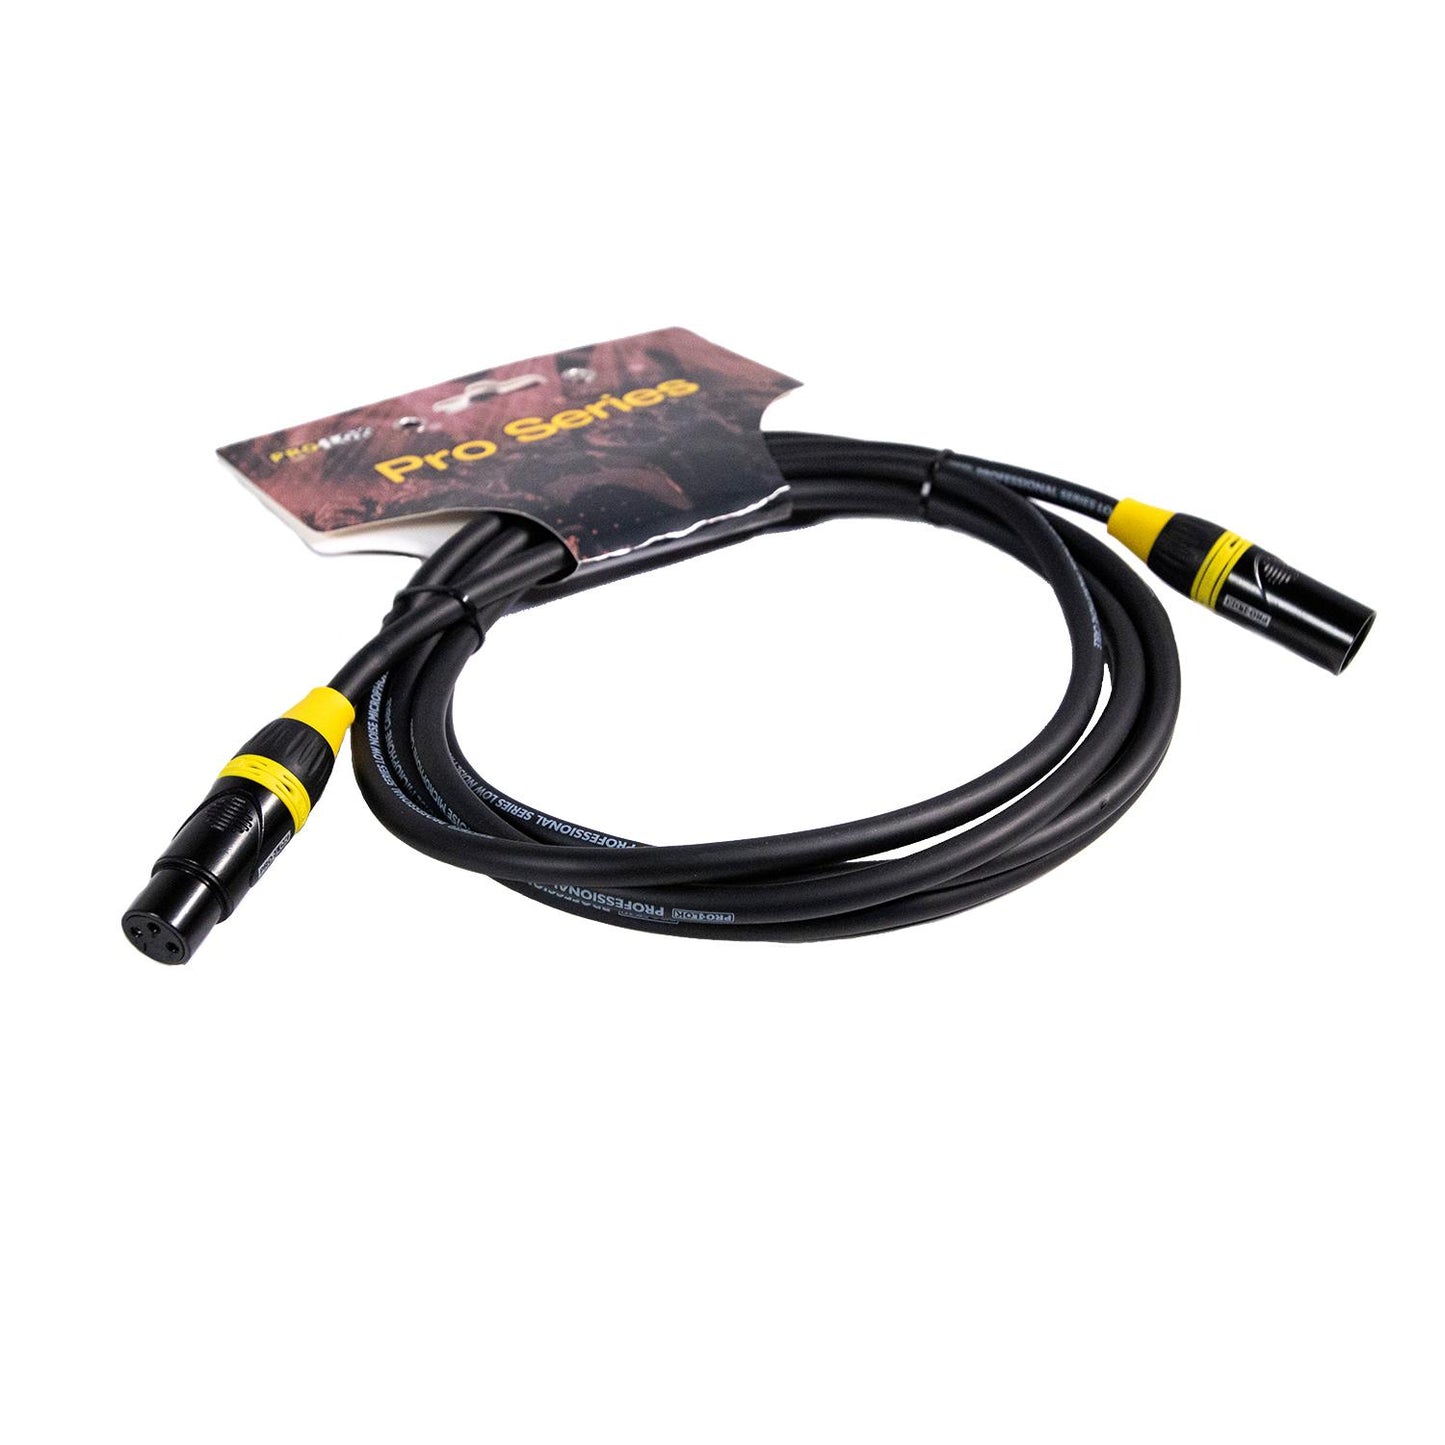 Cable para Micrófono PROS10-MIC TROPICAL